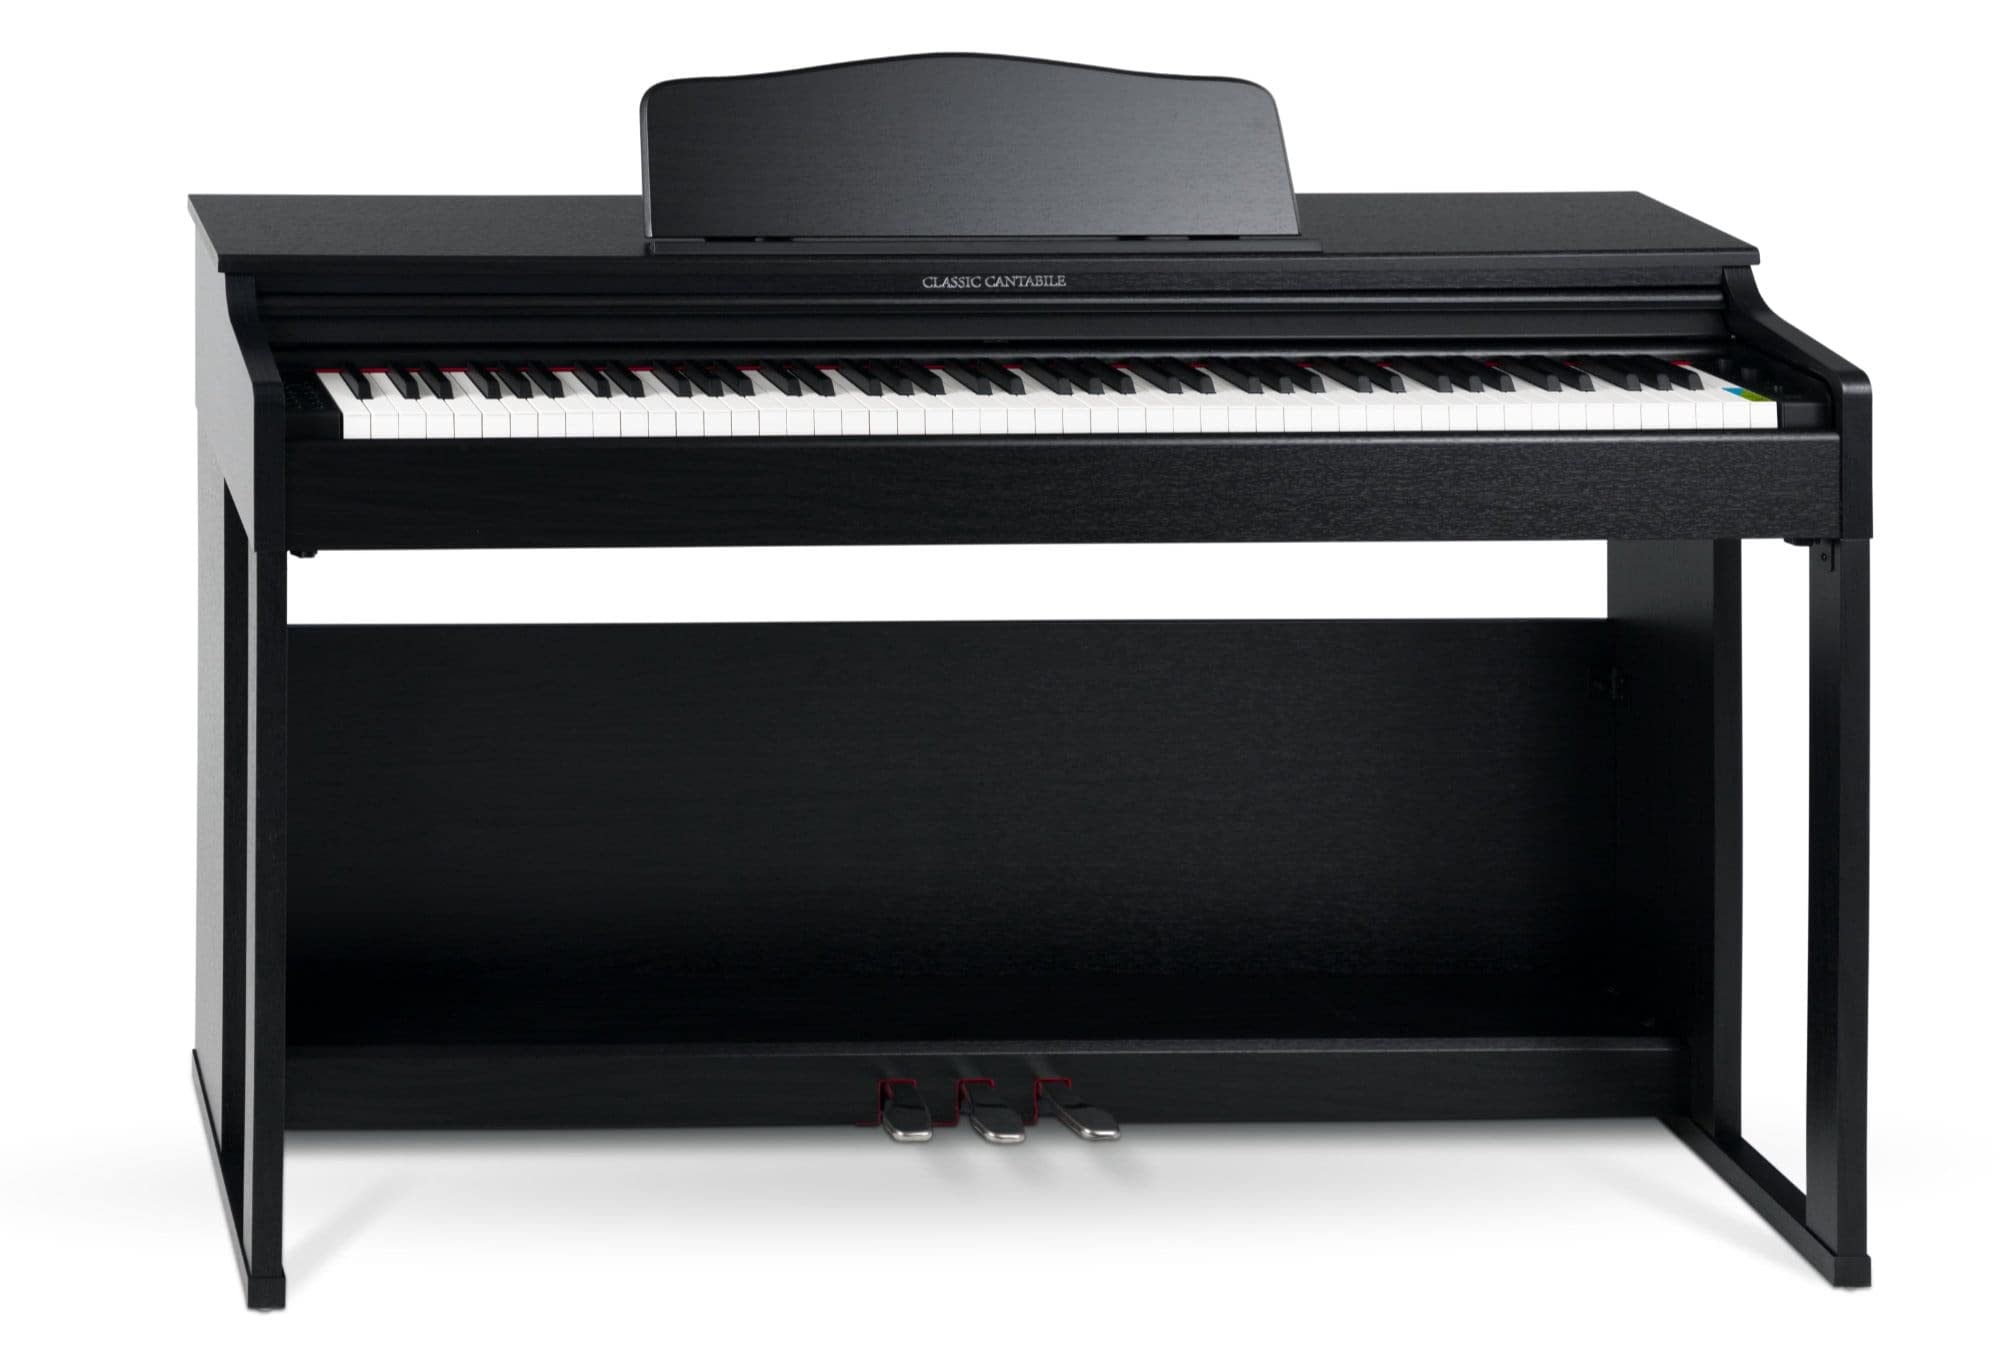 Classic Cantabile DP-230 SM E-Piano - Digitalpiano mit Hammermechanik - 88 Tasten - 2 Anschlüsse für Kopfhörer, USB, Audio und MIDI - 3 Pedale - Piano für Anfänger - Schwarz matt